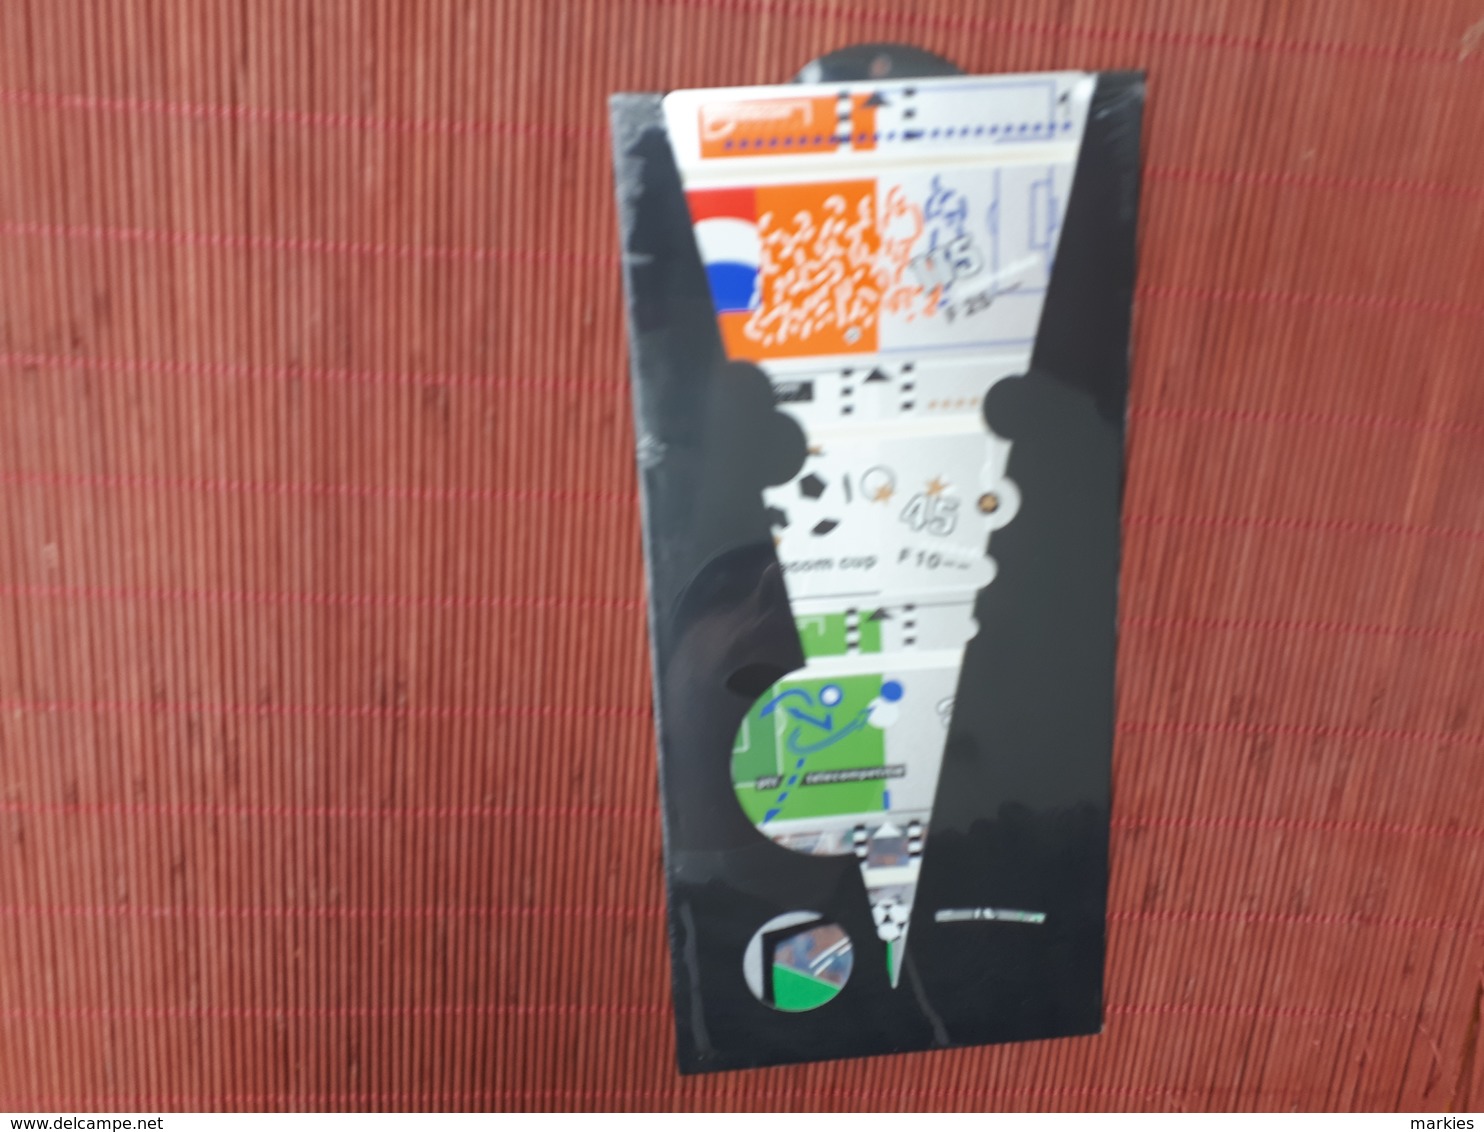 Set 4 Phonecards Football Netherlands With Folder (Mint,Neuve) Rare - Públicas